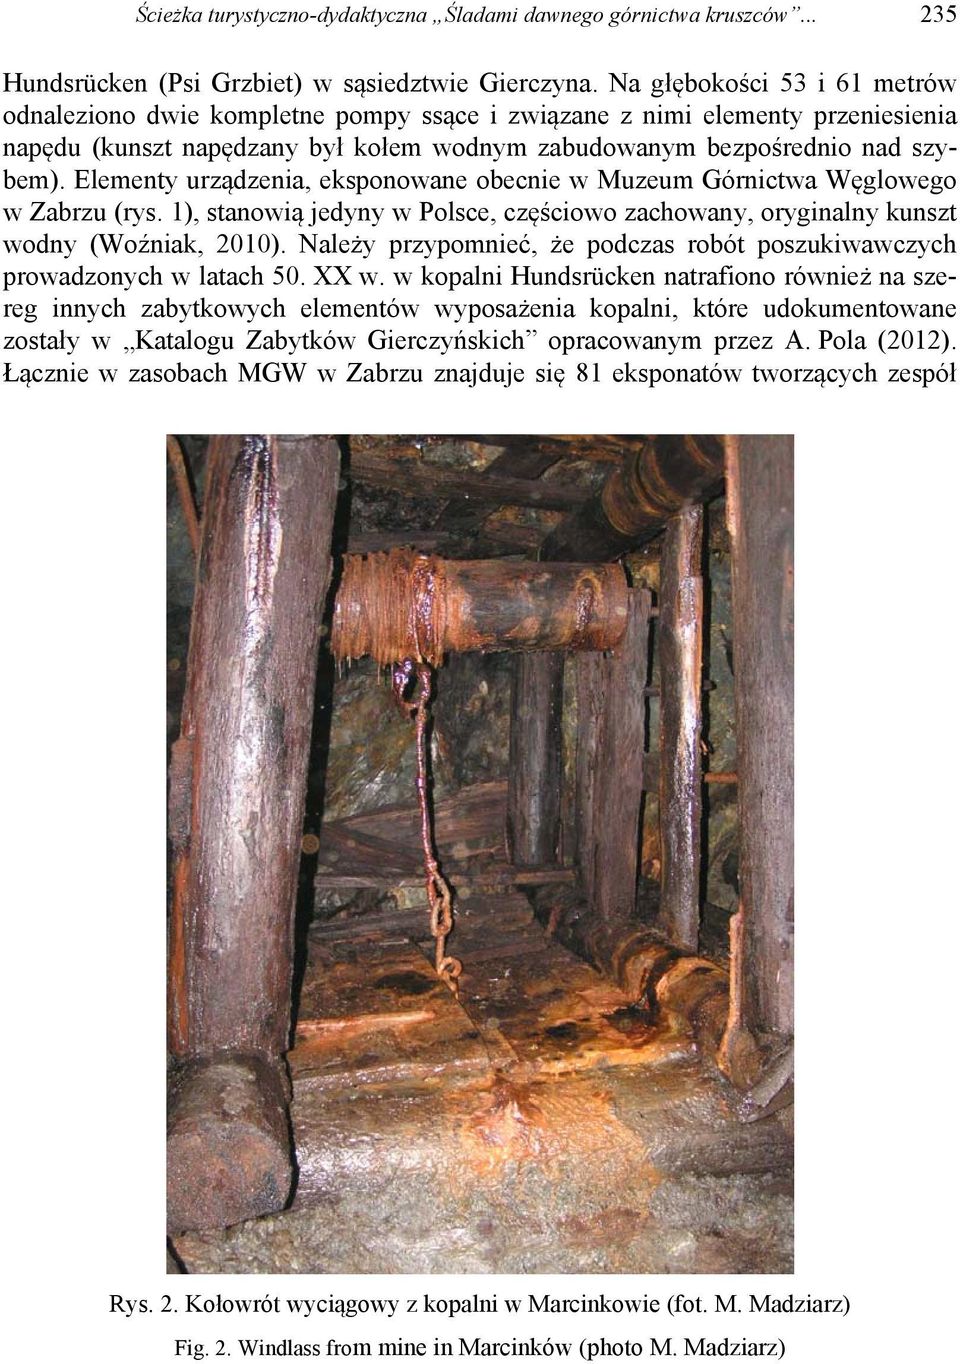 Elementy urządzenia, eksponowane obecnie w Muzeum Górnictwa Węglowego w Zabrzu (rys. 1), stanowią jedyny w Polsce, częściowo zachowany, oryginalny kunszt wodny (Woźniak, 2010).